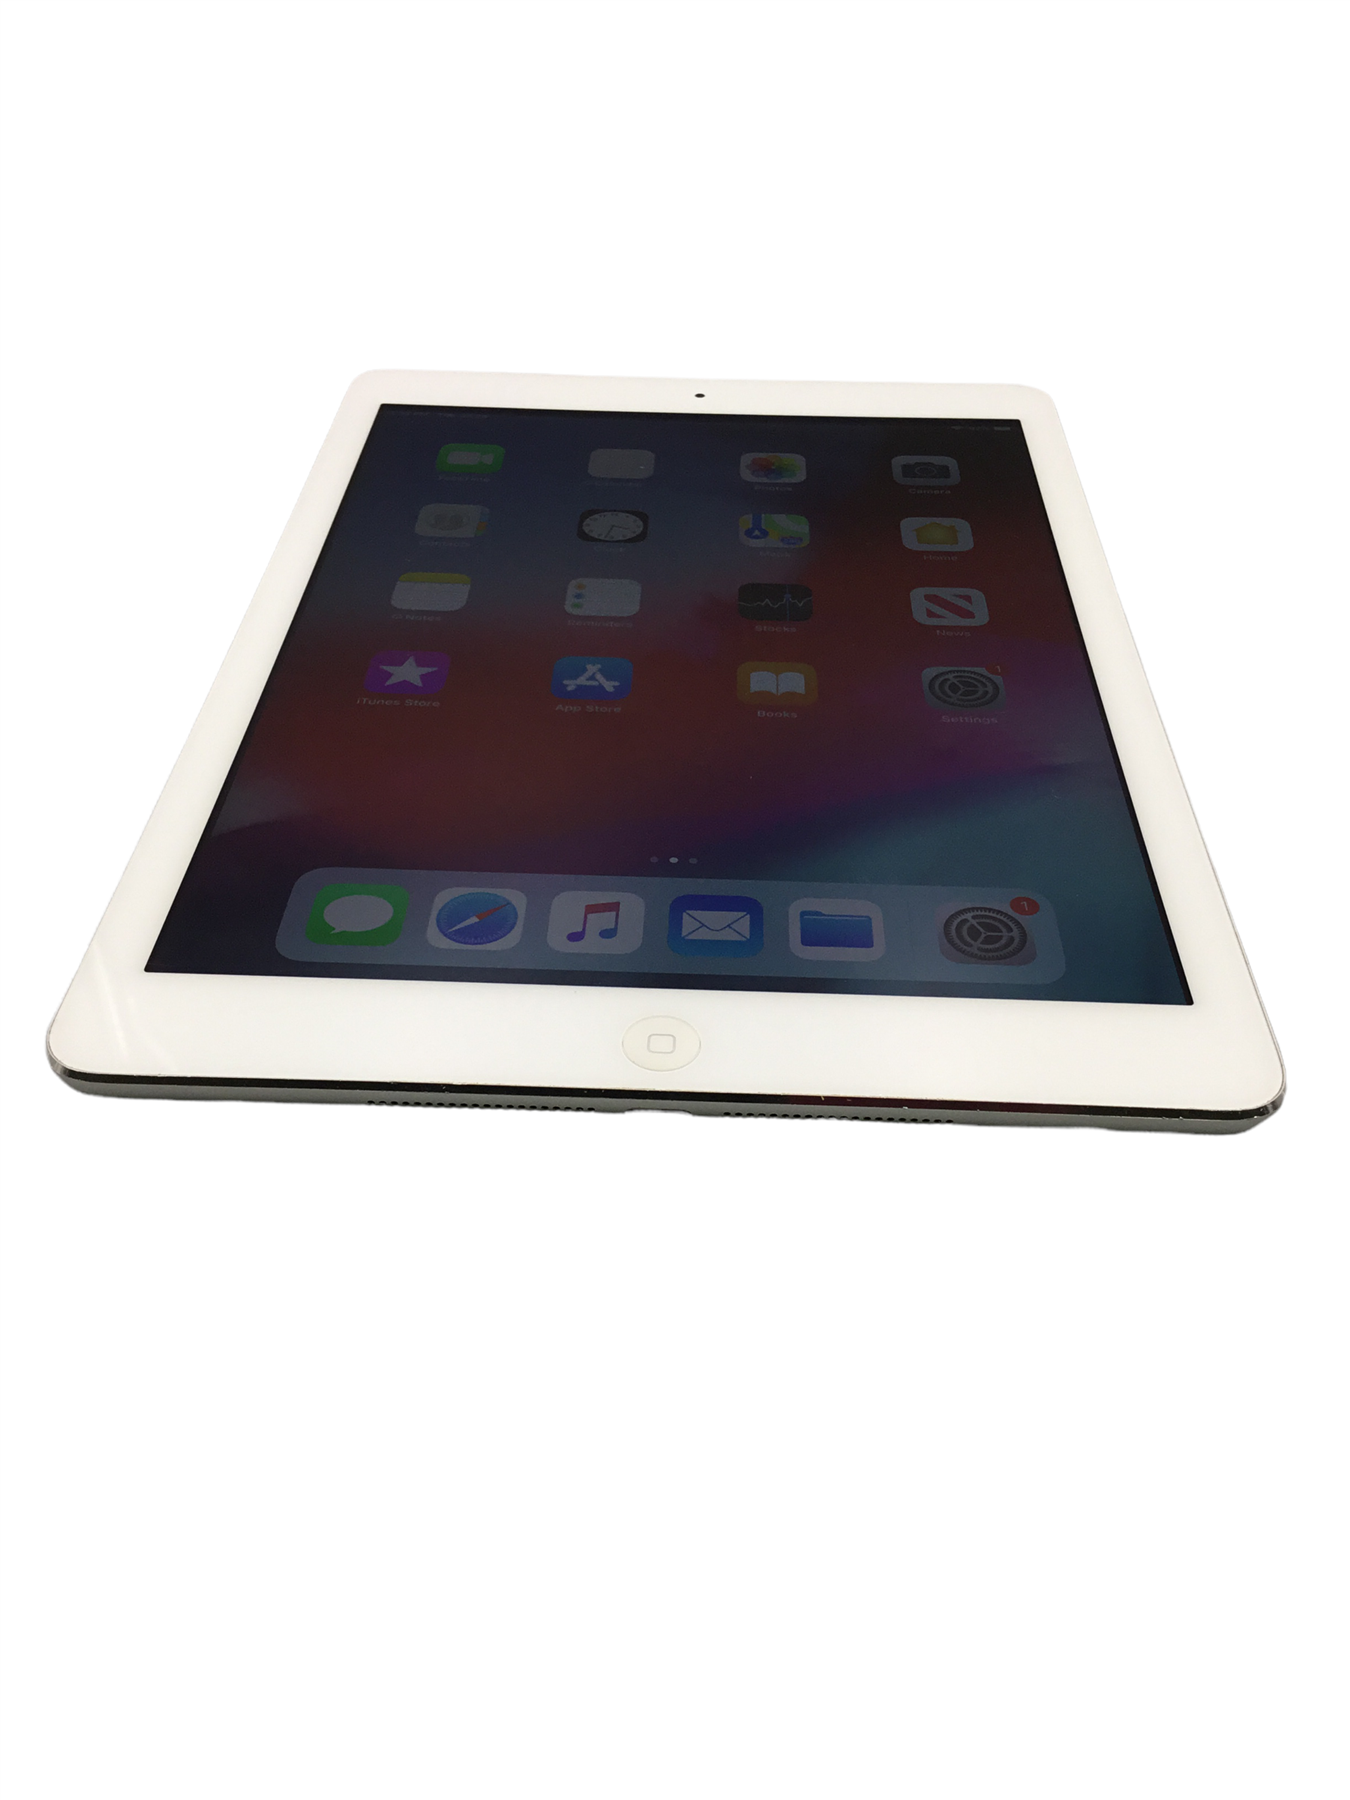 Apple iPad Air A1474 9.7-inch 16GB Wi-Fi MD788LL/B Grade B